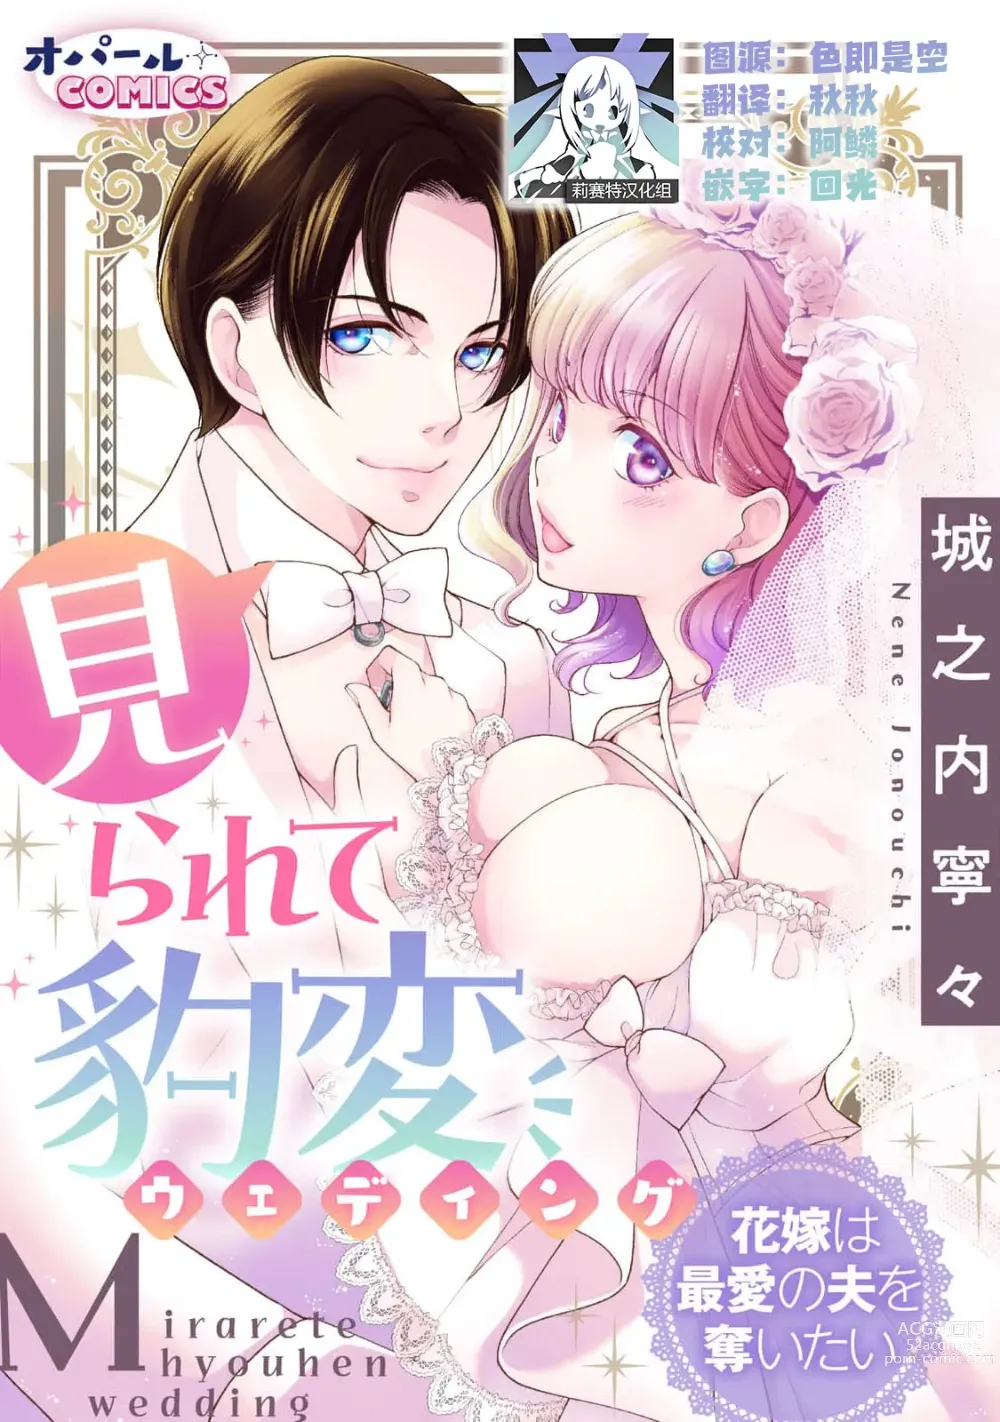 Page 1 of manga 被众人围观的豹变结婚典礼，新娘想夺回最爱的丈夫